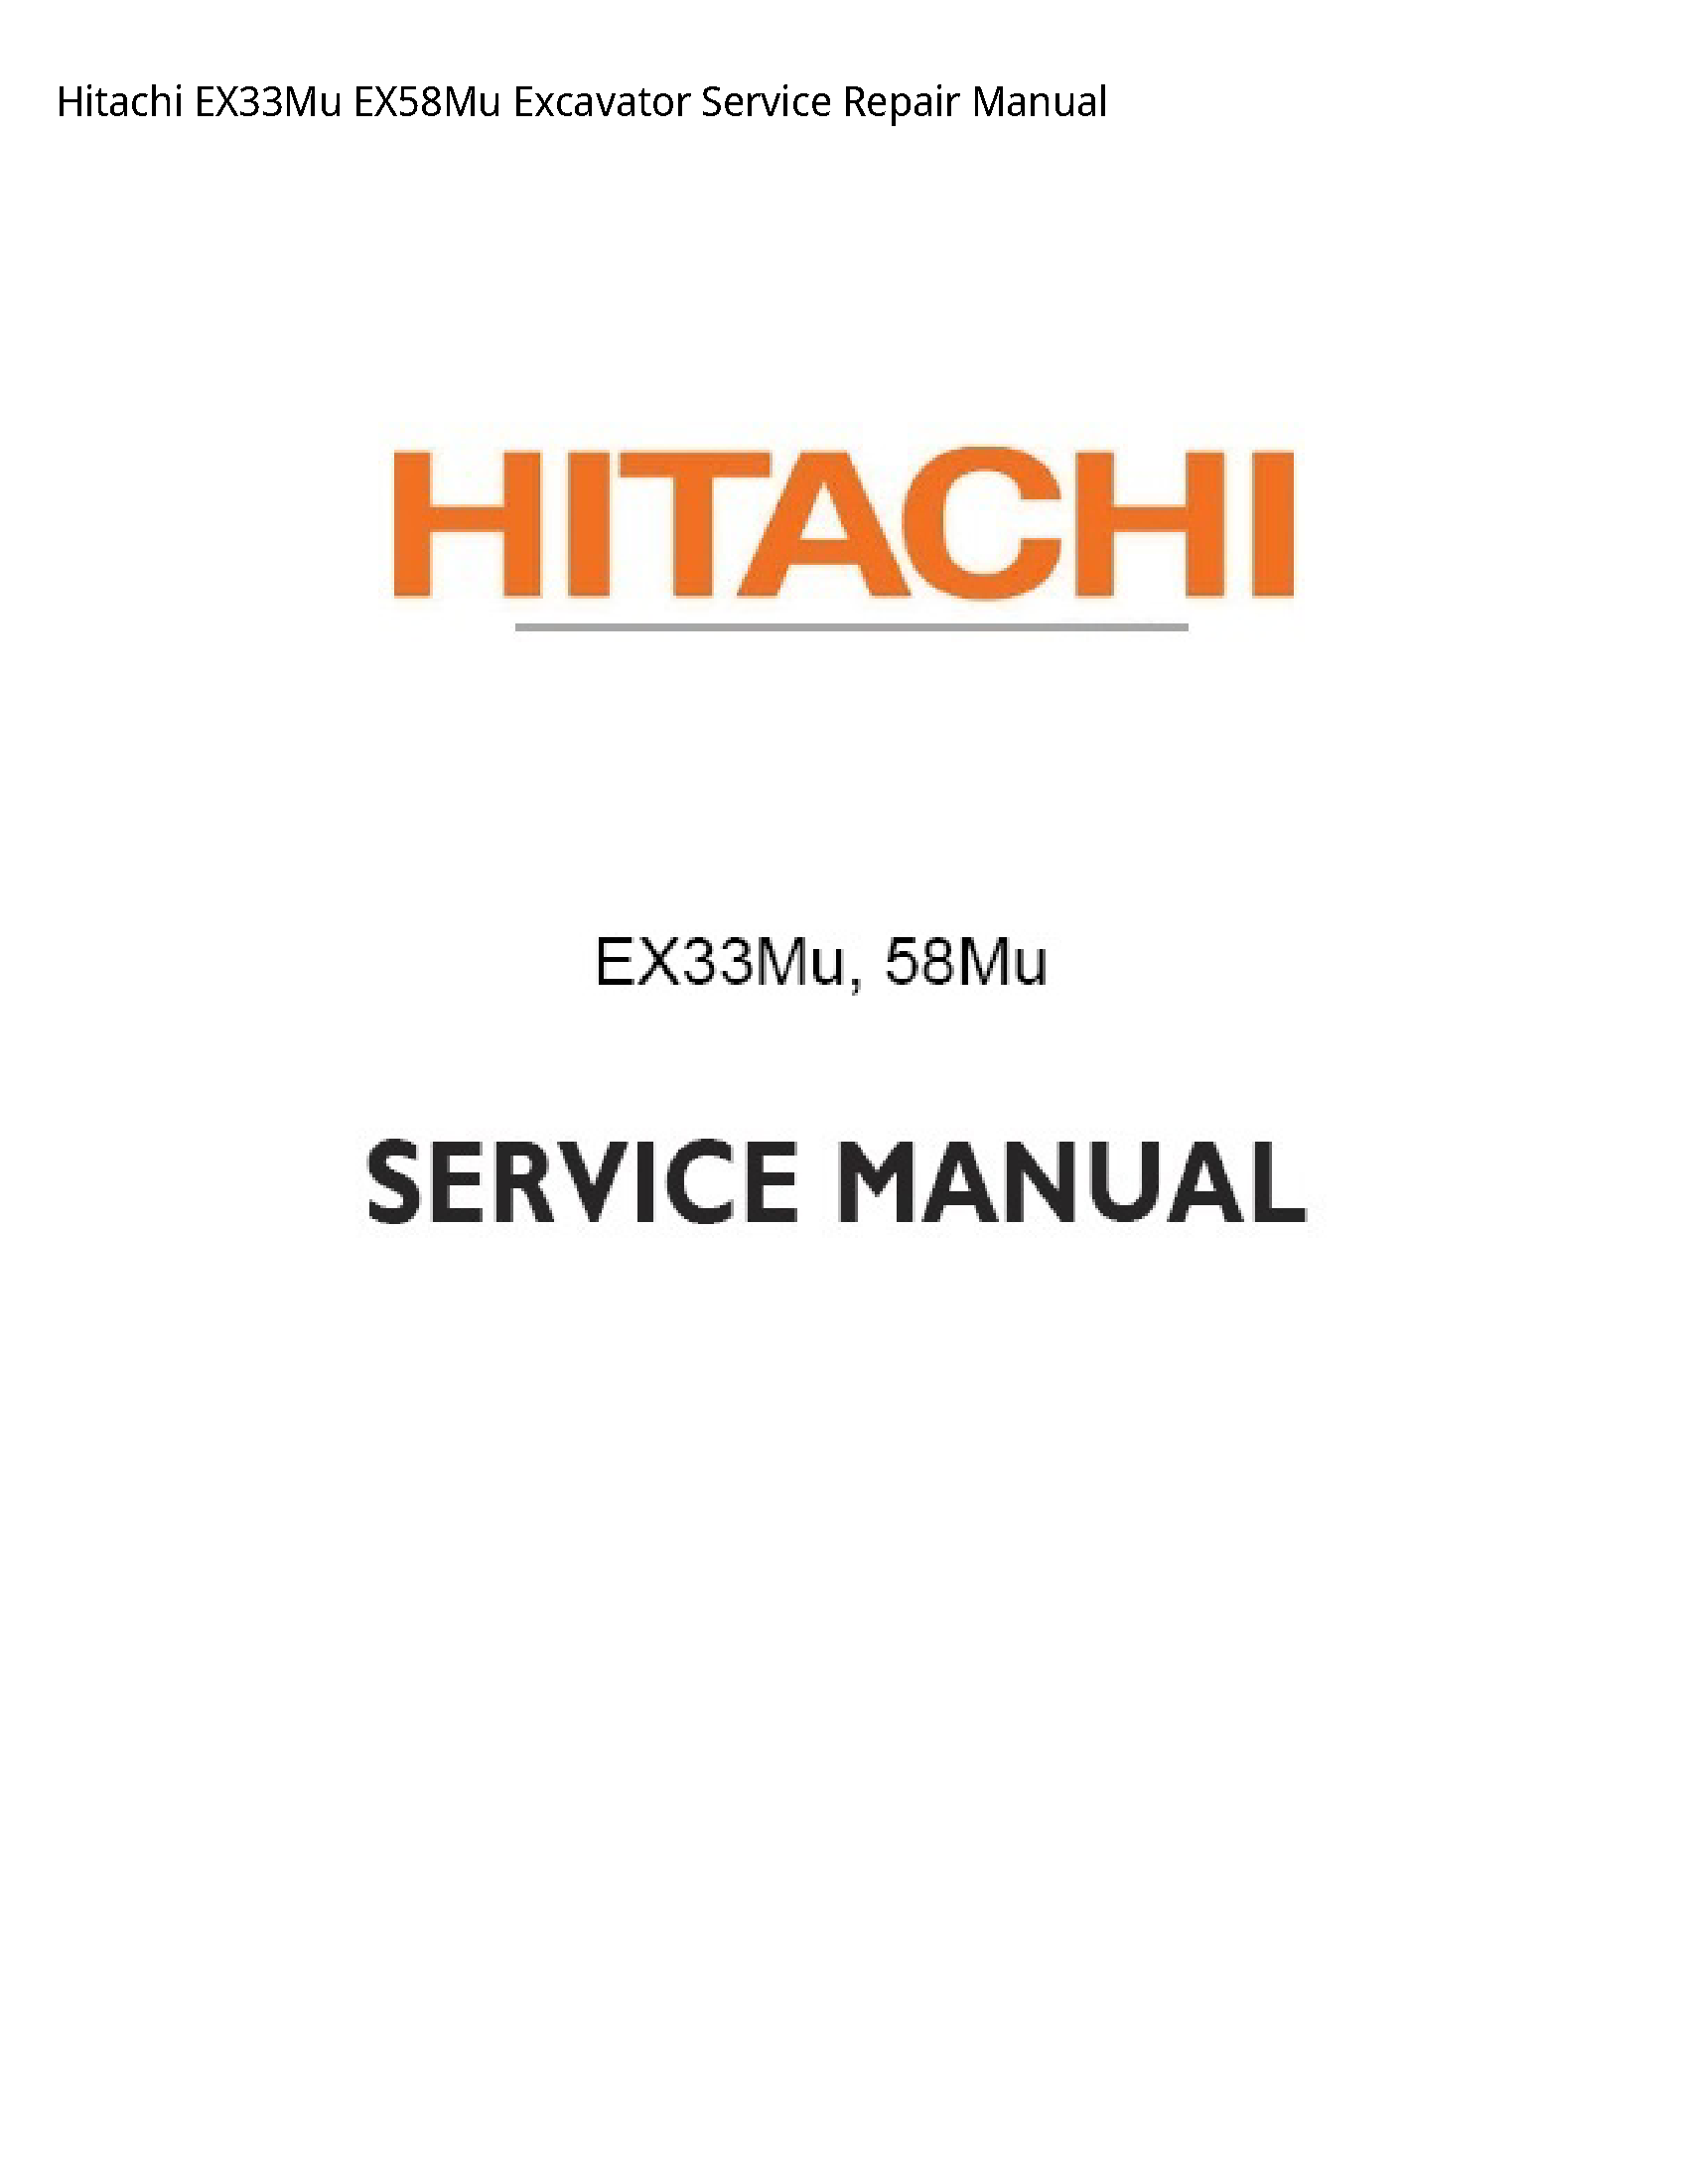 Hitachi EX33Mu Excavator manual